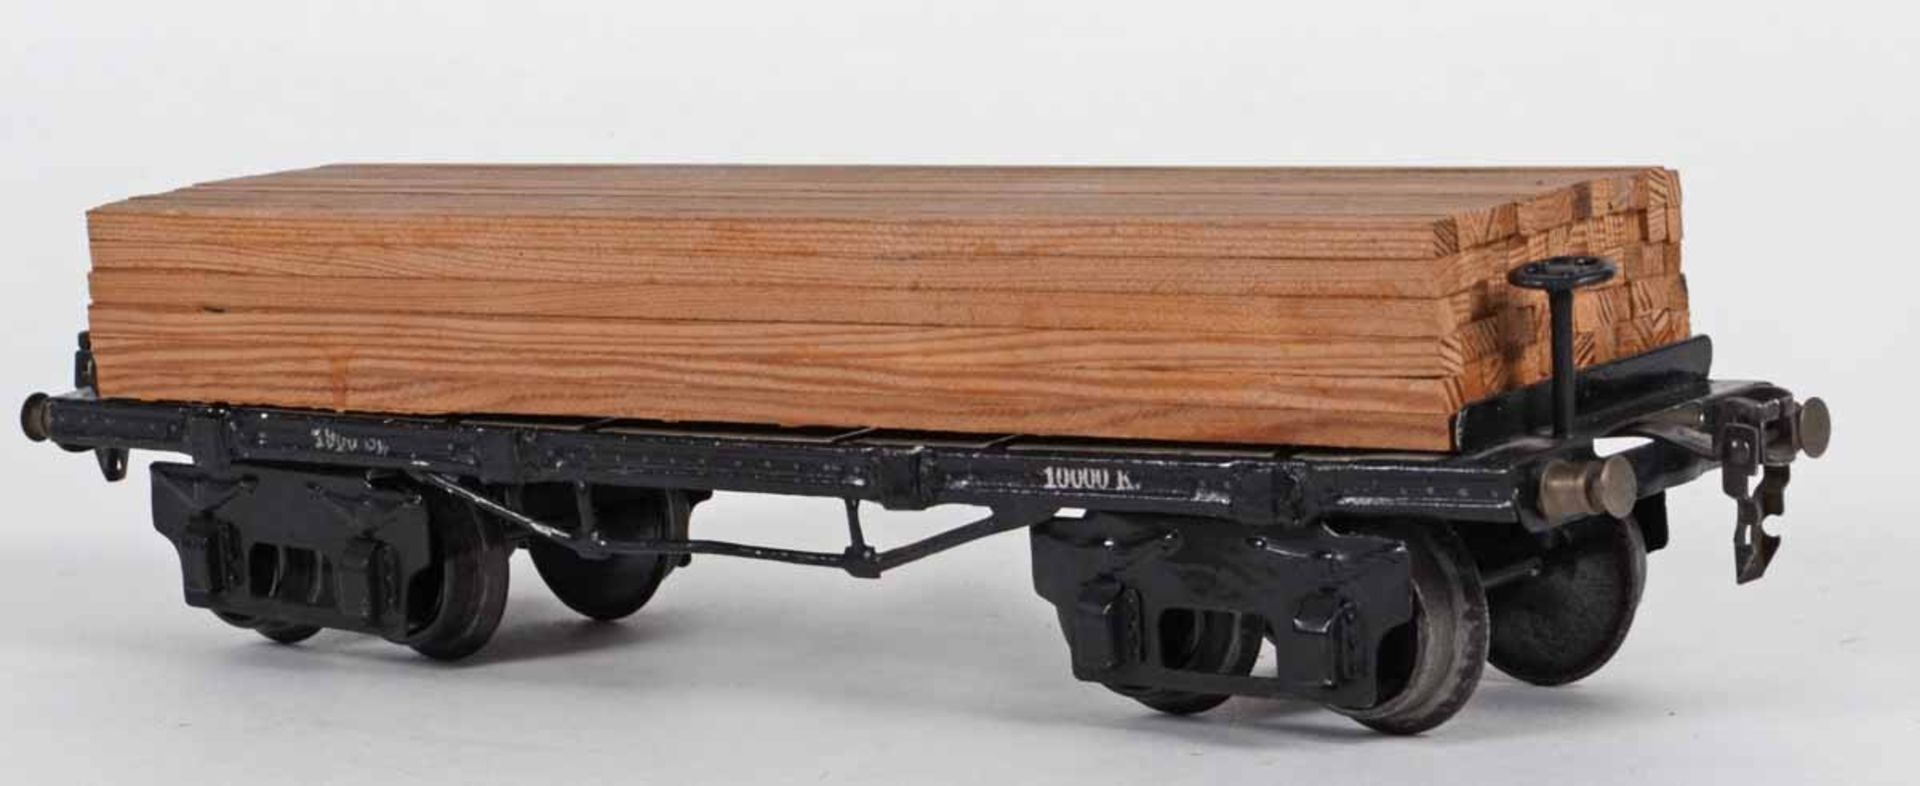 Güterwagen Hersteller: Märklin, Spur 1, Doppelachser mit Langholzladung, gute Erhaltung, L ca. 31, - Bild 3 aus 3